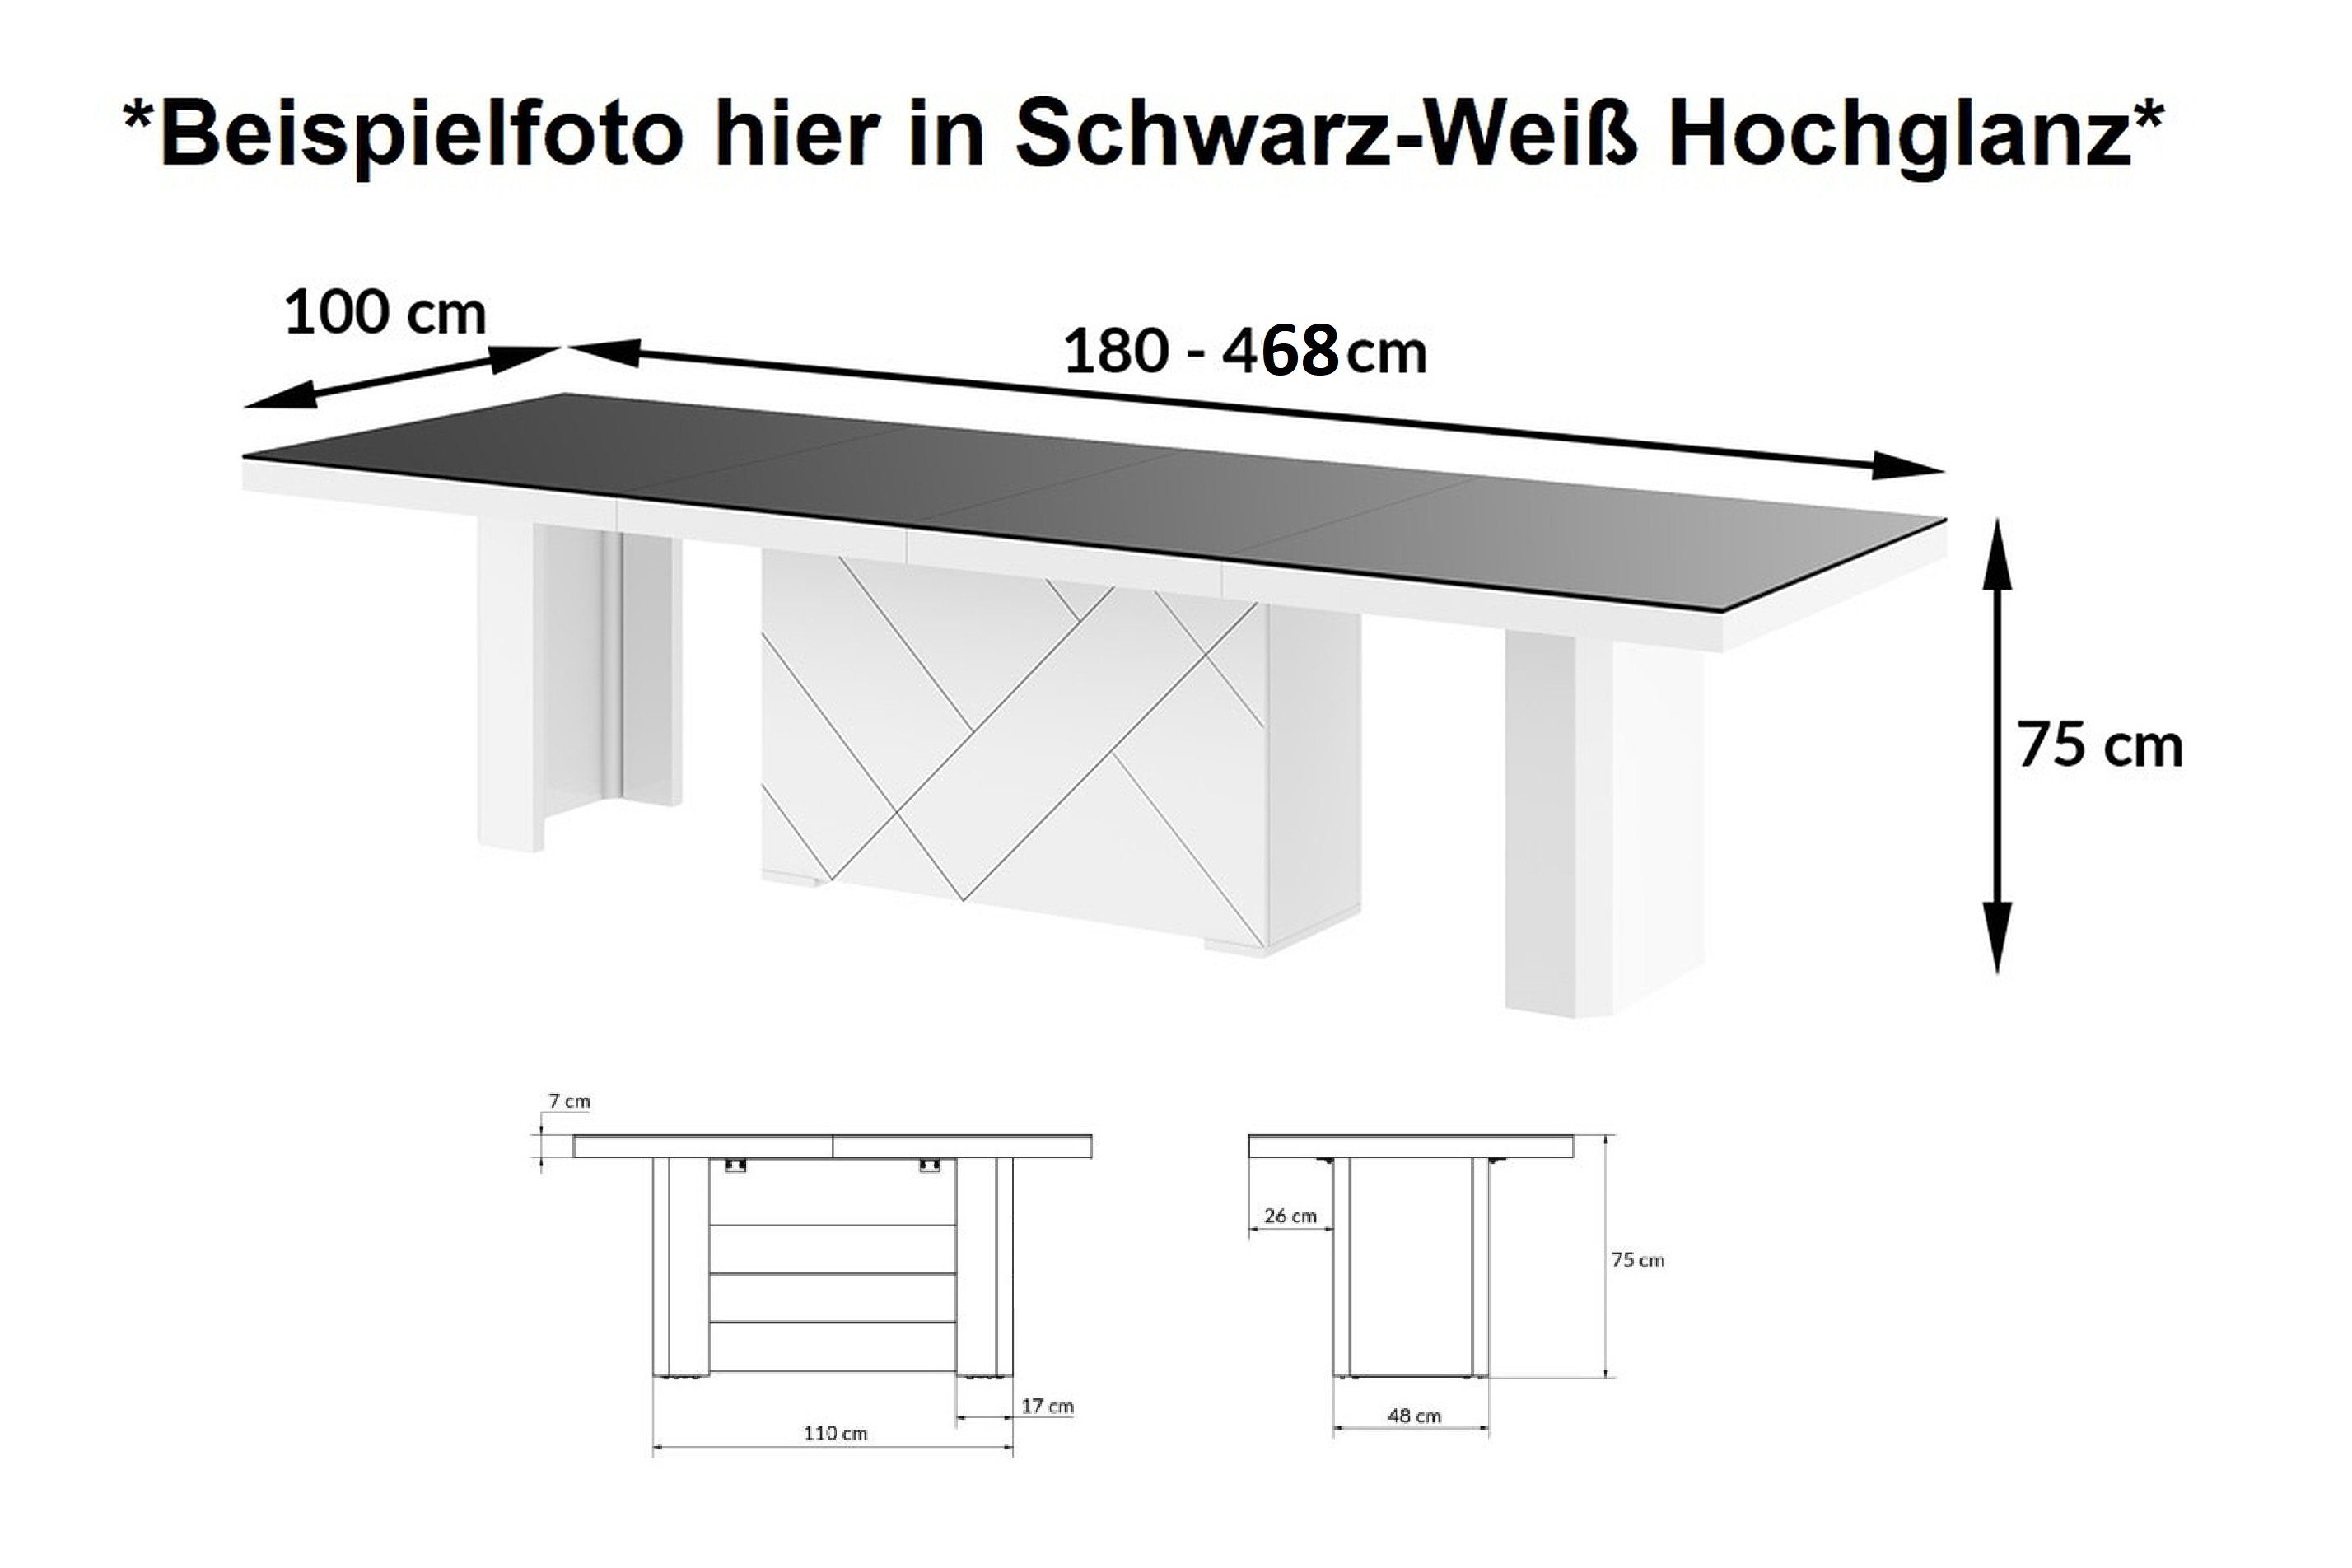 designimpex Esstisch Hochglanz XXL Hochglanz / Schwarz ausziehbar Weiß 180-468cm HEK-111 Tisch Schwarz Design / Hochglanz Weiß